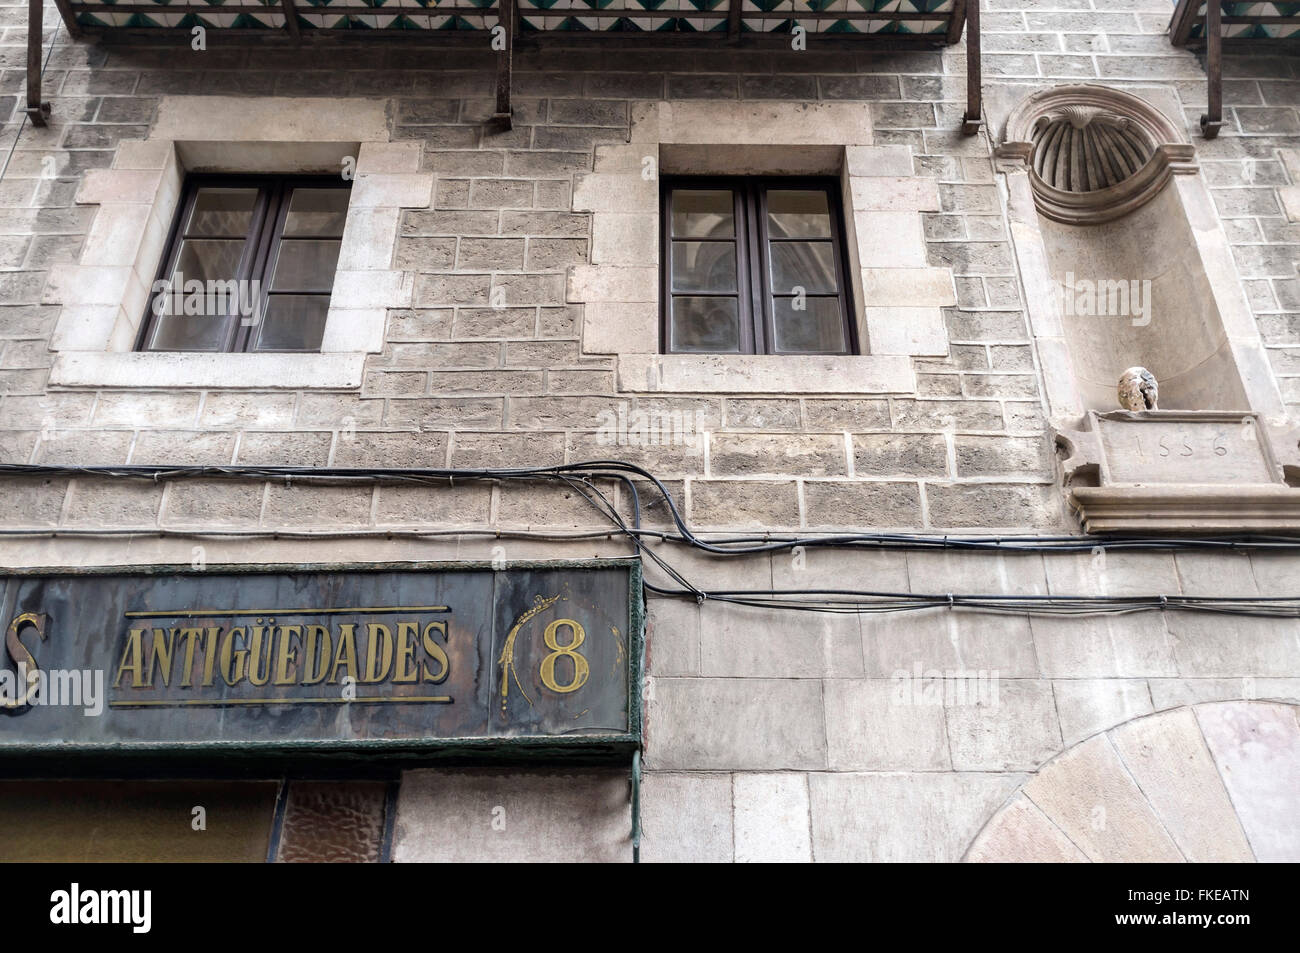 Facade building sign antiguedades shop, Barri Gotic, Barcelona. Stock Photo